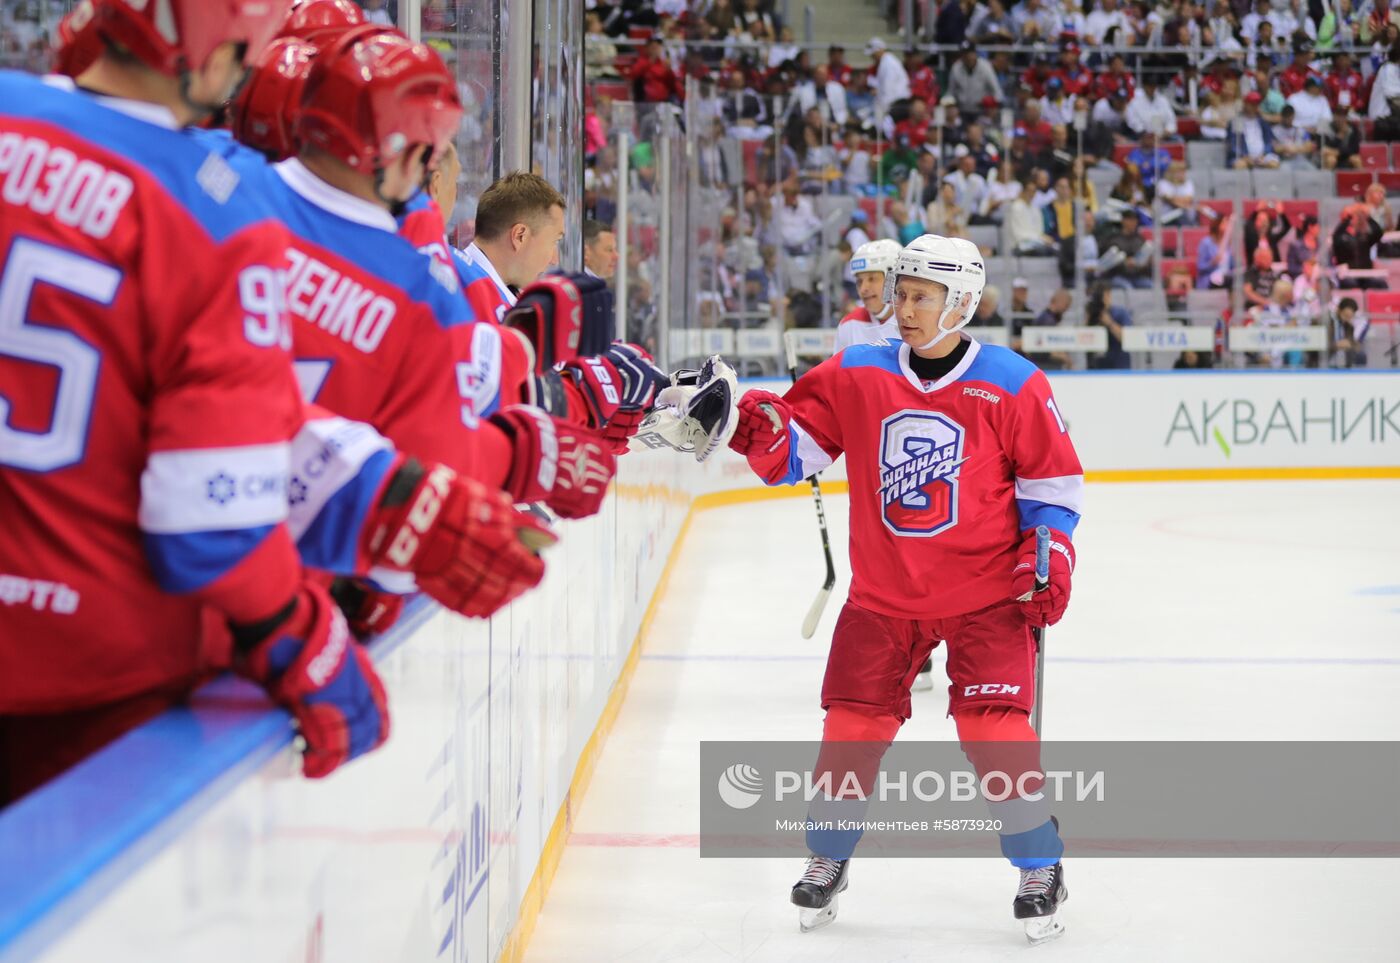 Президент РФ В. Путин принял участие в гала-матче Ночной хоккейной лиги